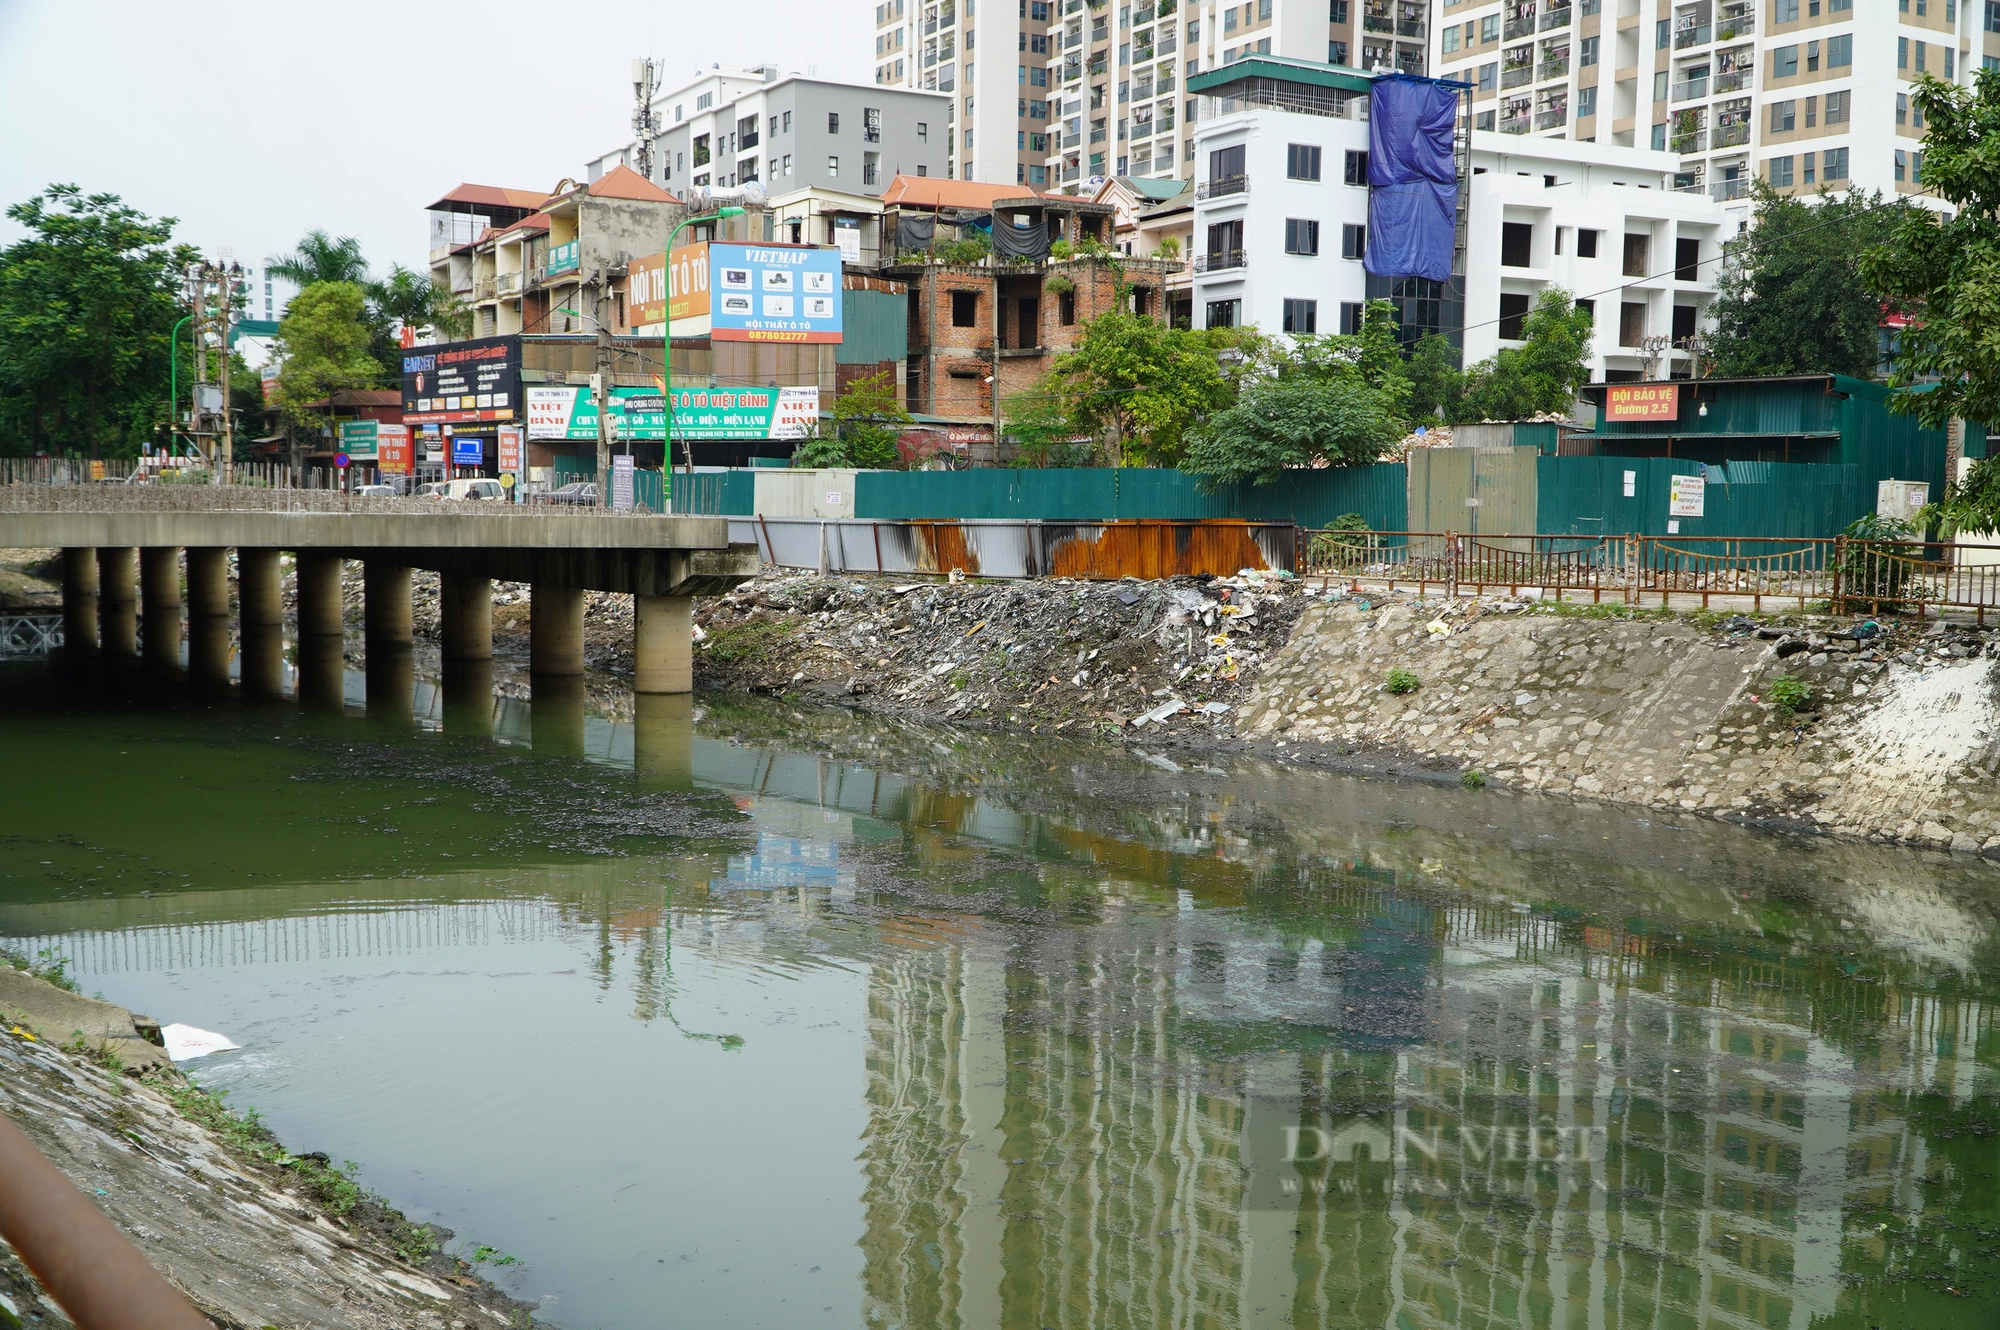  Dự án thu gom nước thải sinh hoạt trên sông Lừ vẫn ngổn ngang sau 3 năm khởi công - Ảnh 2.